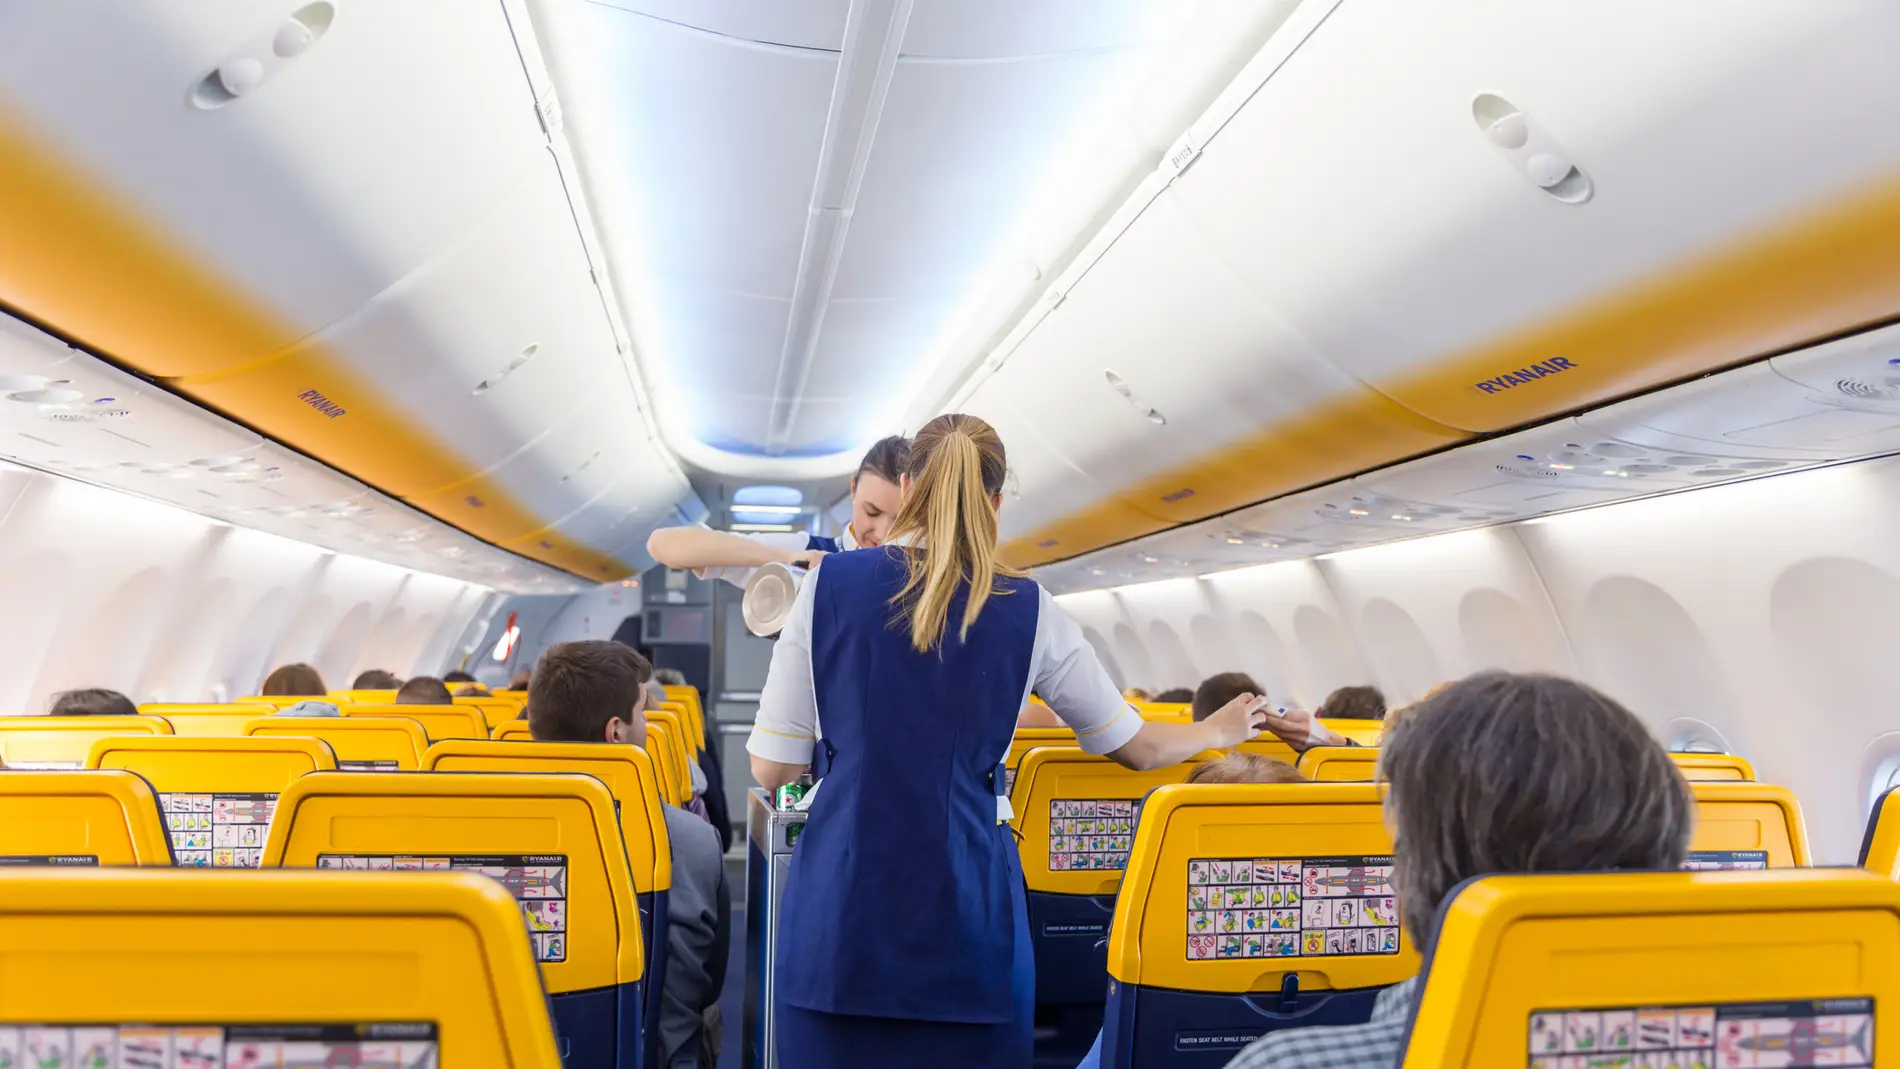 Tres mochilas para viajar ligeros que caben en la cabina de un avión